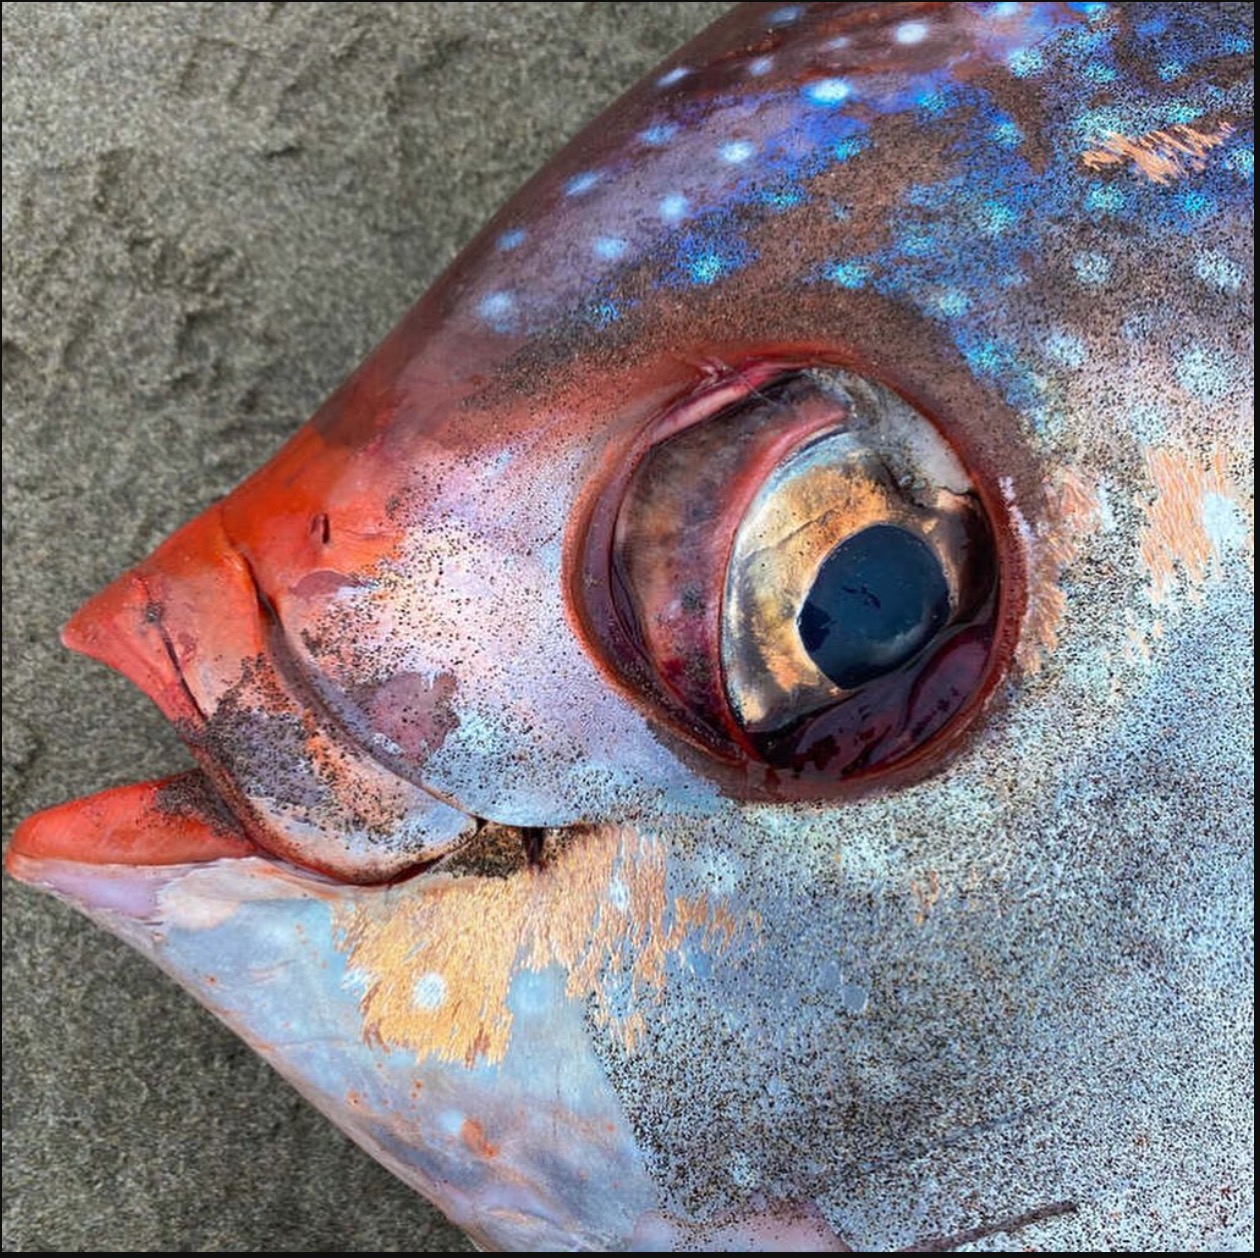 Ikan Gergasi Berwarna Oren Seberat 45kg Ditemui Terdampar Di Pantai - sajagempak.com